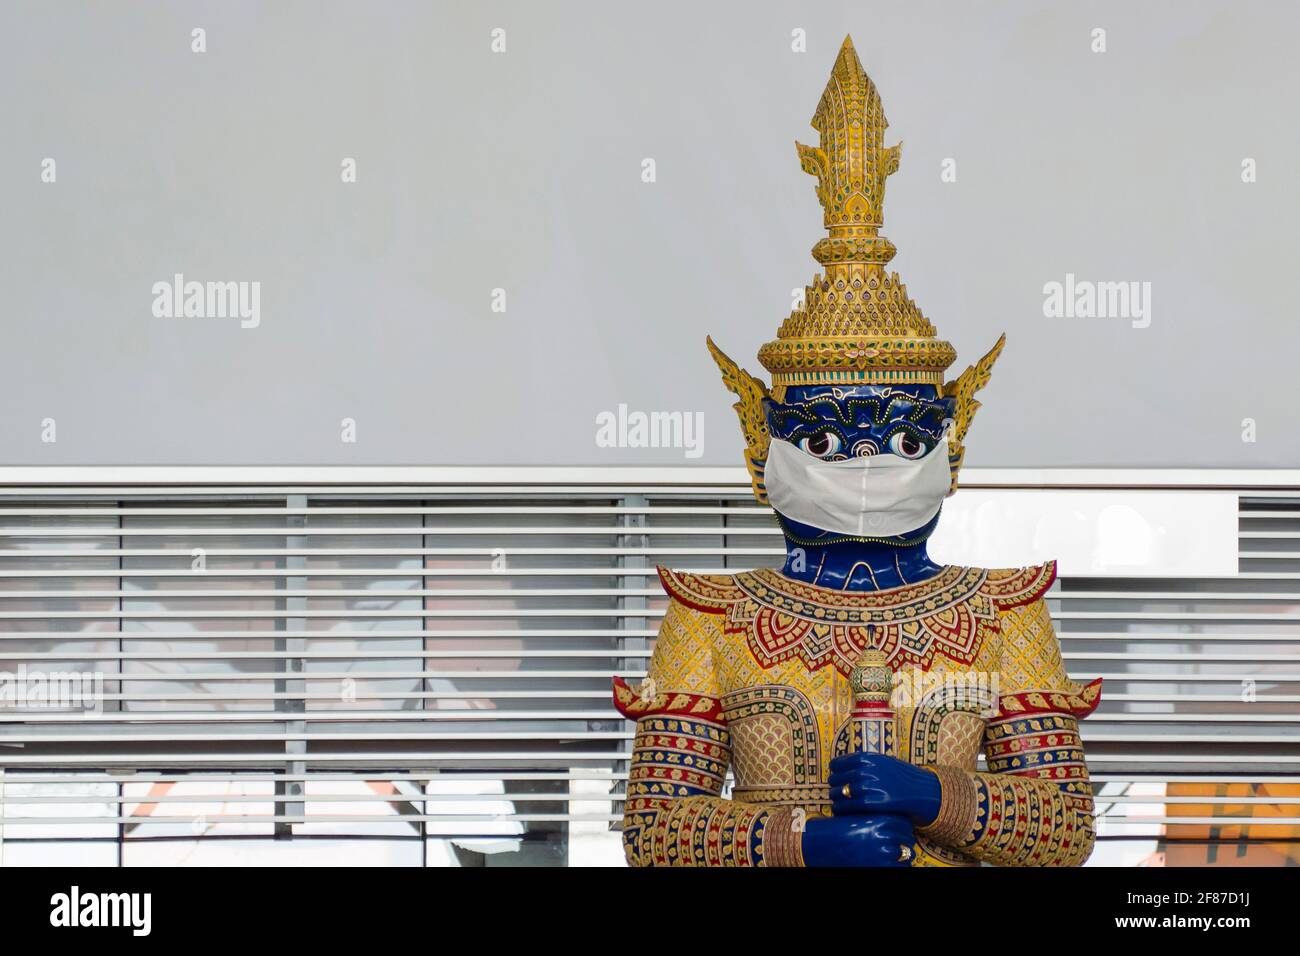 die traditionelle thailändische Riesenstatue am Flughafen Suvarnabhumi trägt ein schützendes Gesicht Maske, um das Tragen der Maske und die Beobachtung von sozialen zu fördern Distanzierung t Stockfoto